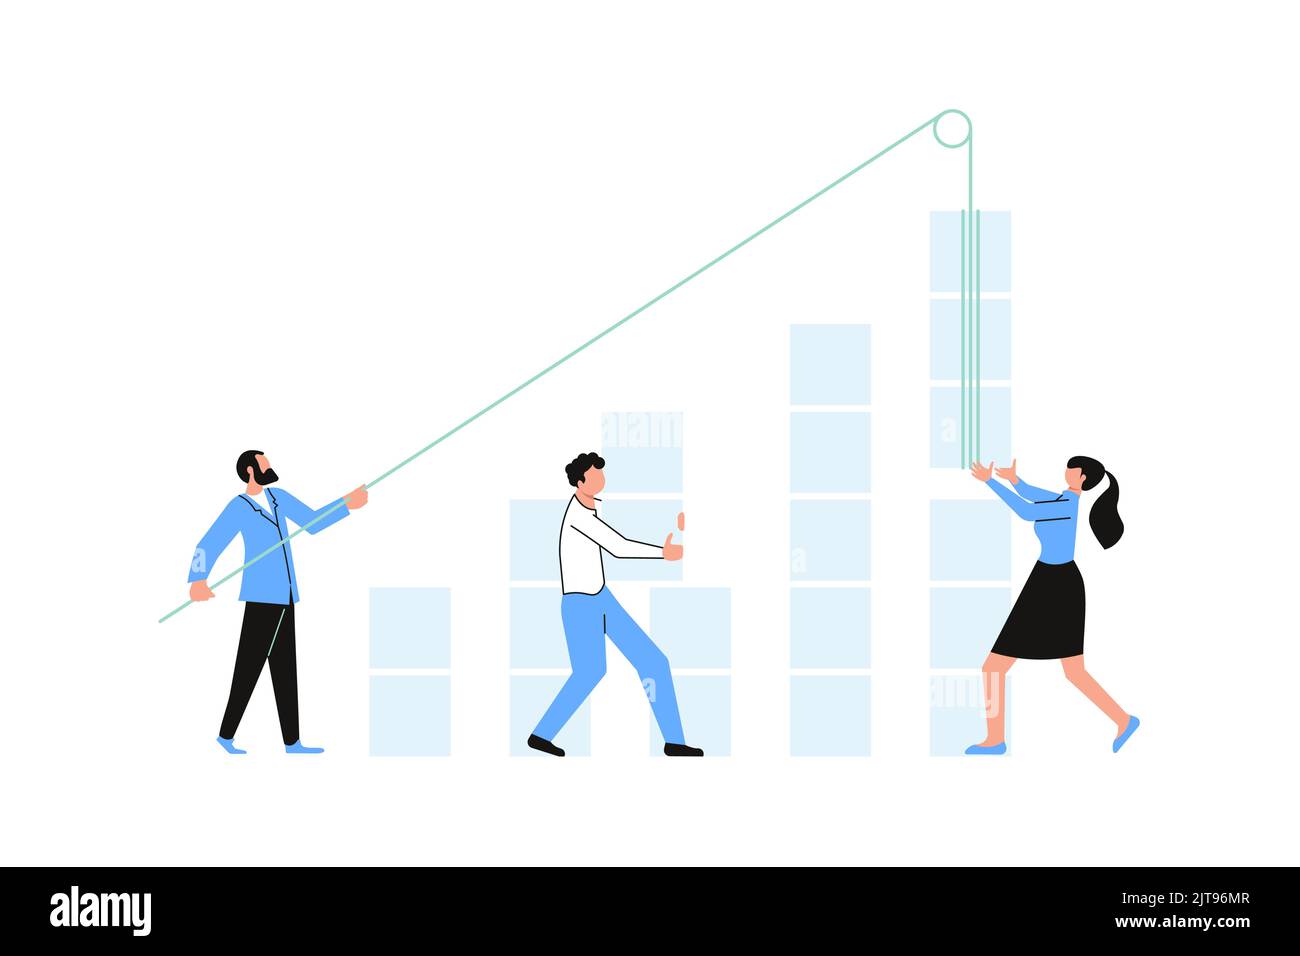 Mitarbeiter arbeiten gemeinsam an einem Businessplan und bild a graph, Teamwork-Konzept-Wachstum und dem Weg zum Erfolg. Flache Vektorgrafik Stock Vektor